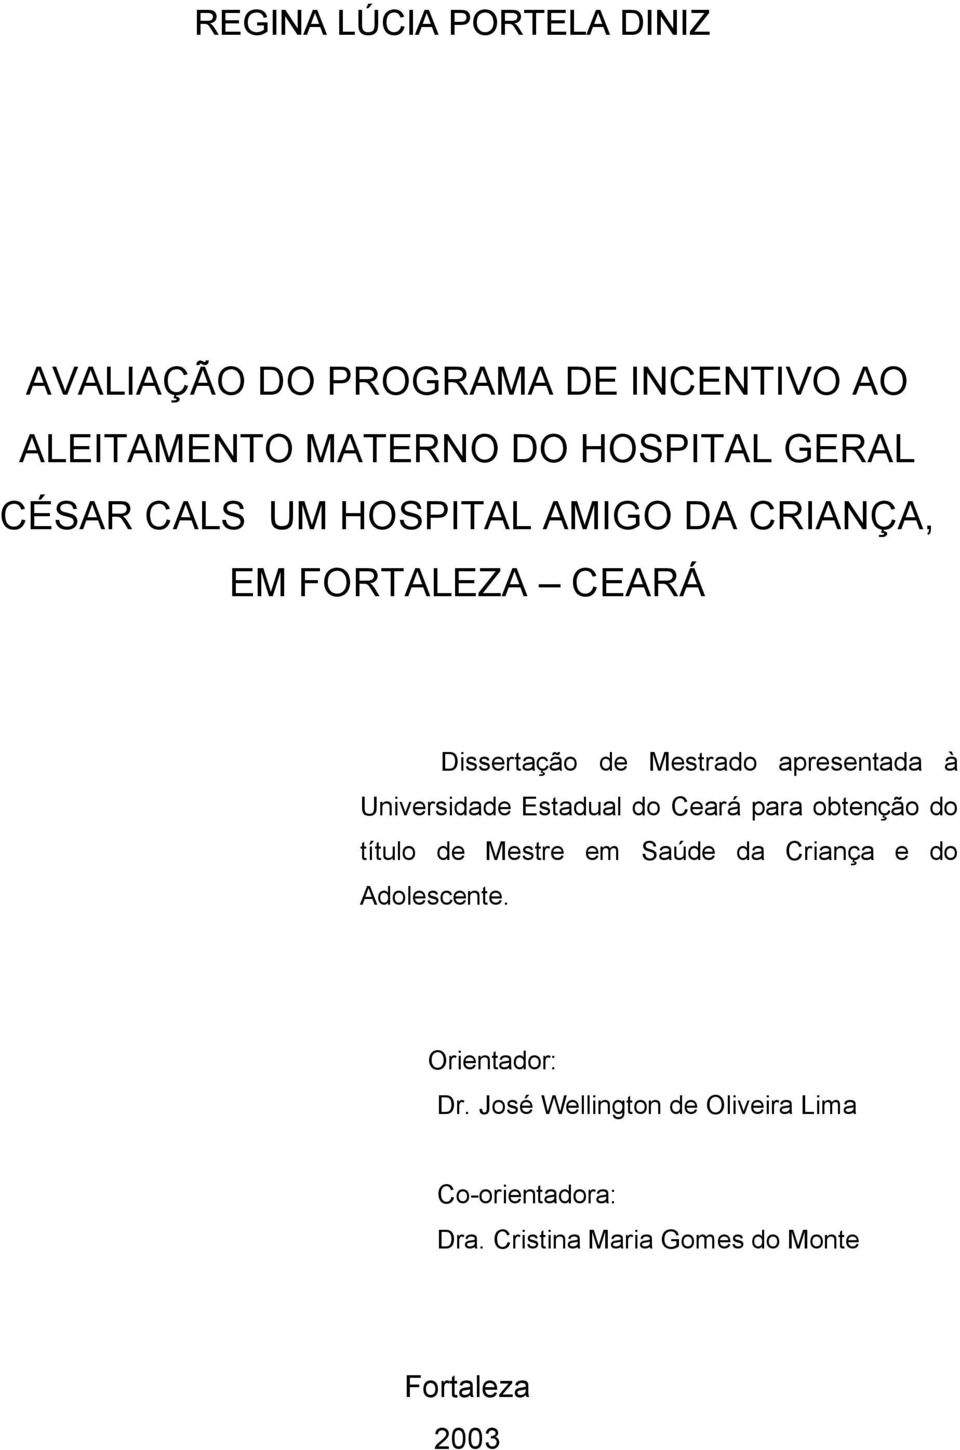 Universidade Estadual do Ceará para obtenção do título de Mestre em Saúde da Criança e do Adolescente.